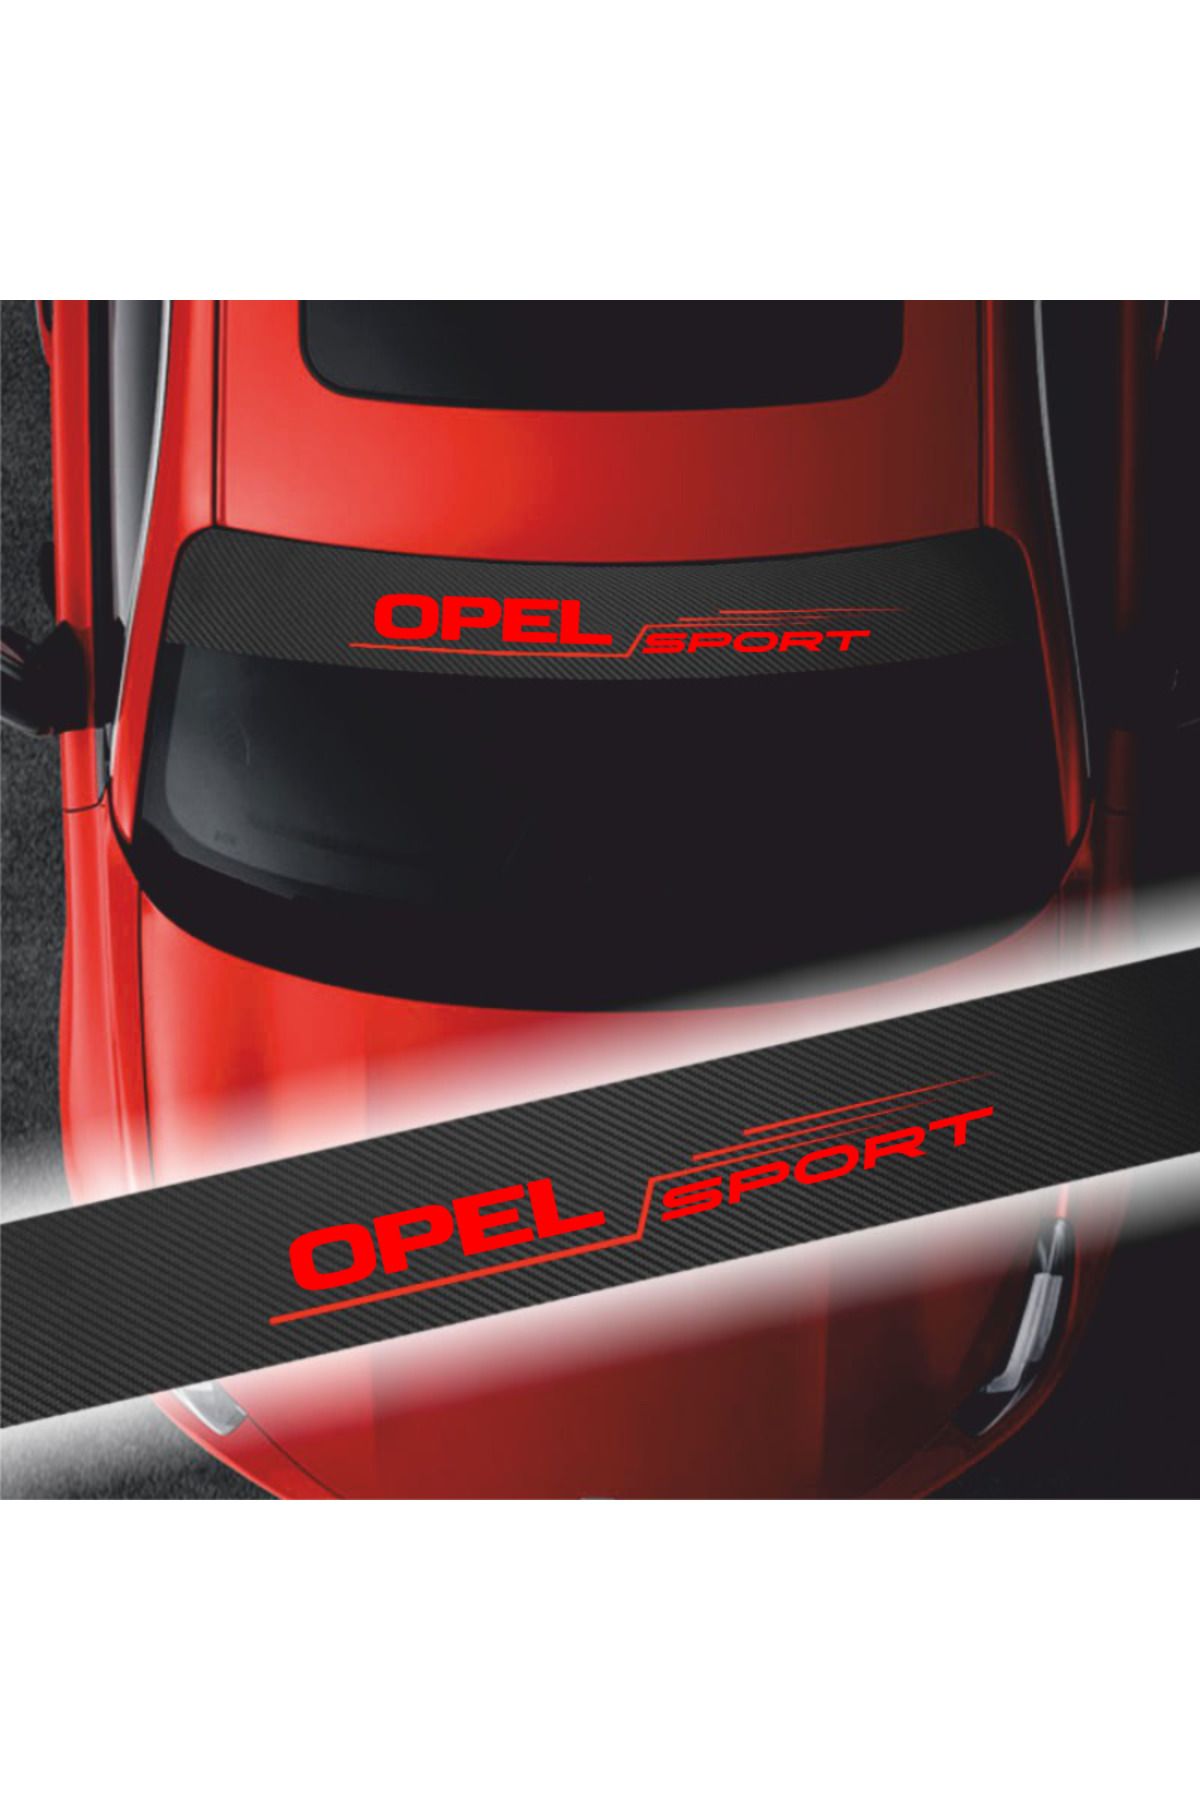 habune Opel Corsa İçin Uyumlu Aksesuar Oto Ön Cam Sticker